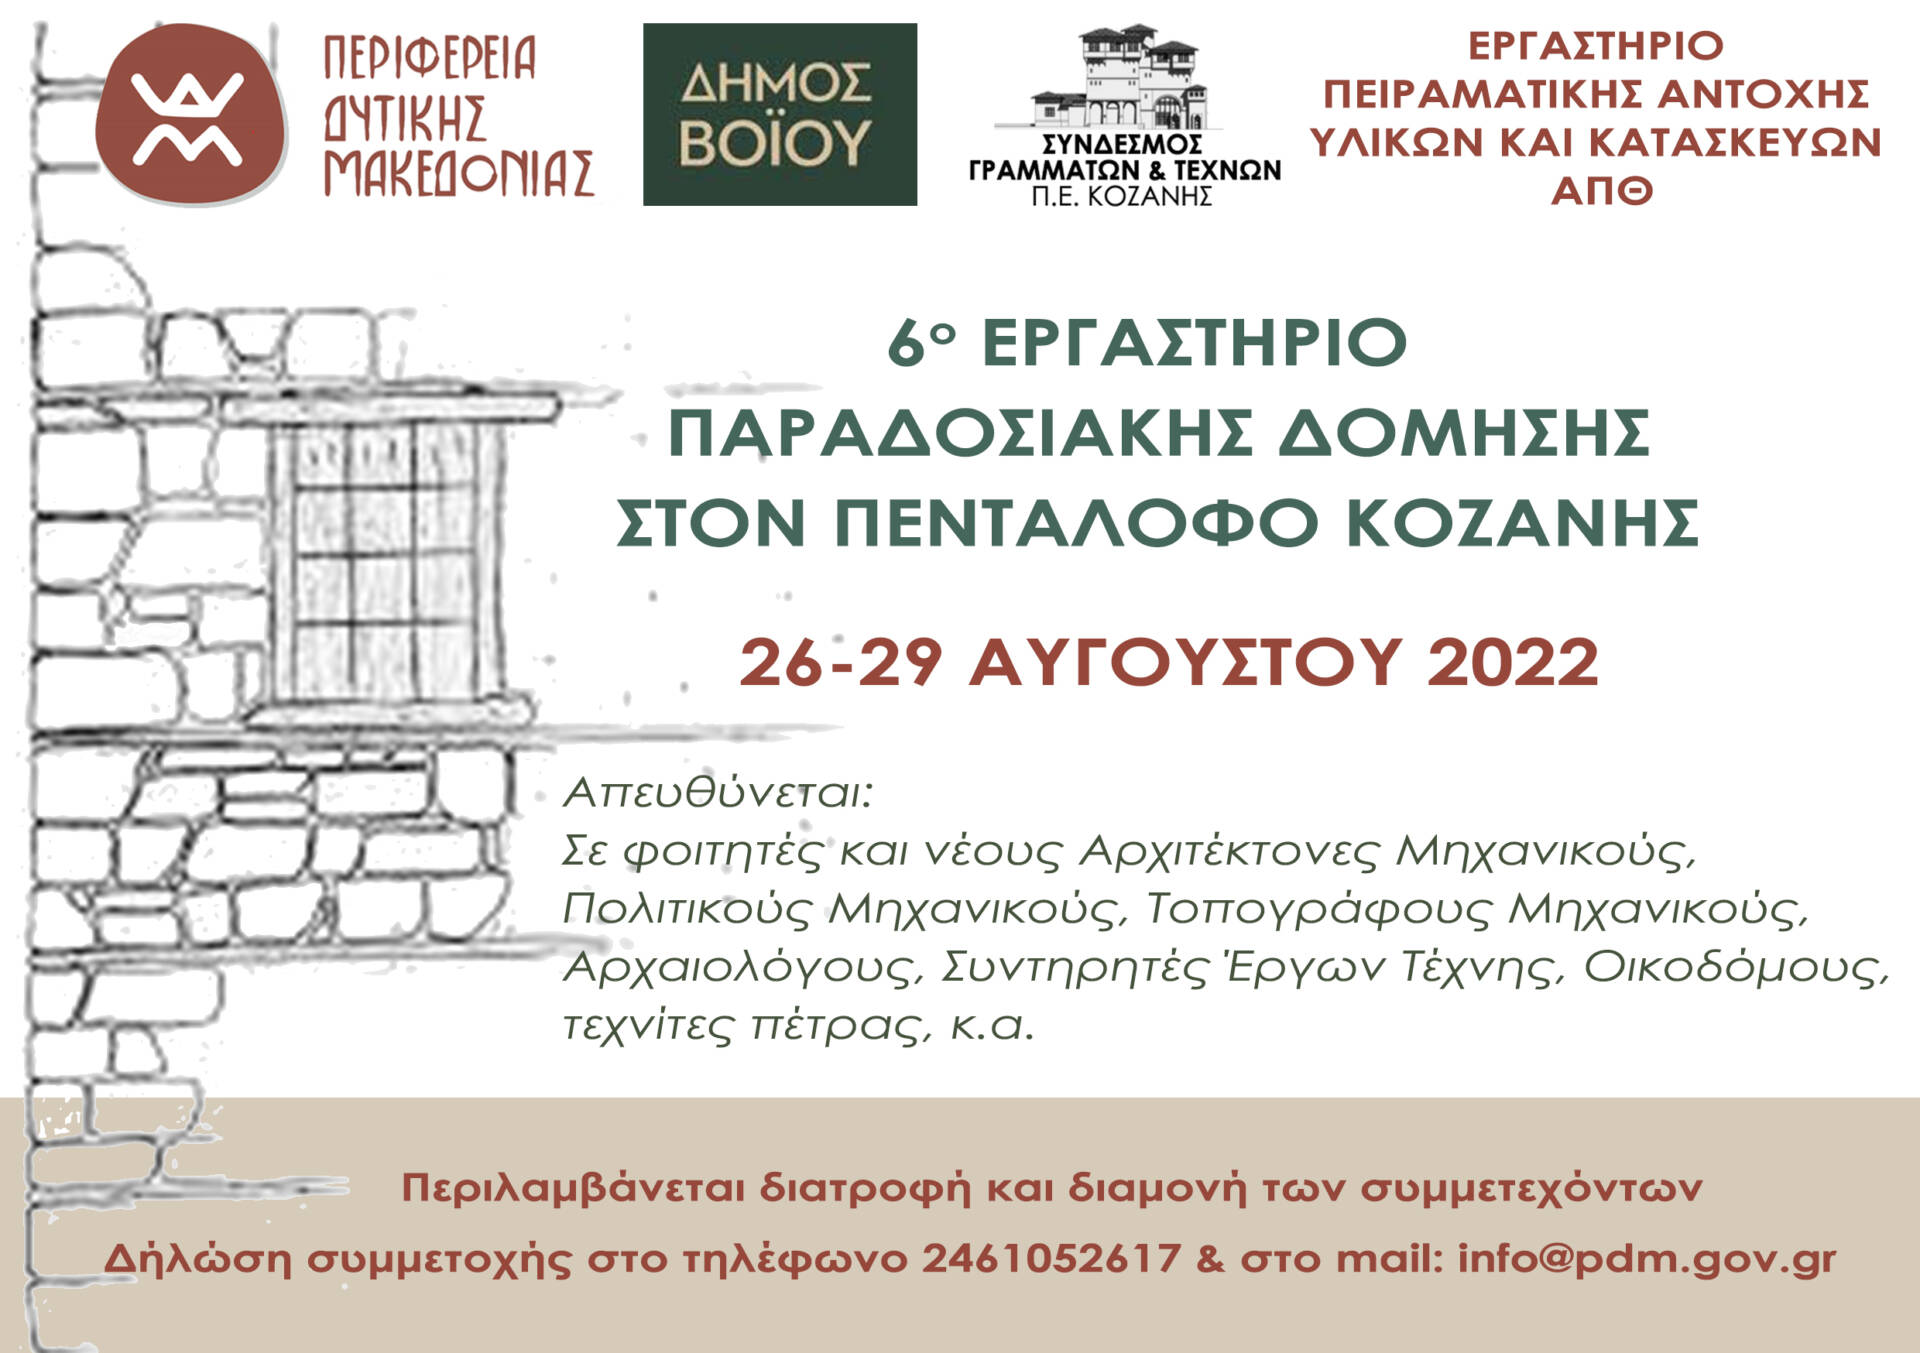 6ο Εργαστήριο Παραδοσιακής Δόμησης που θα πραγματοποιηθεί στον Πεντάλοφο Κοζάνης, από τις 26 έως 29 Αυγούστου